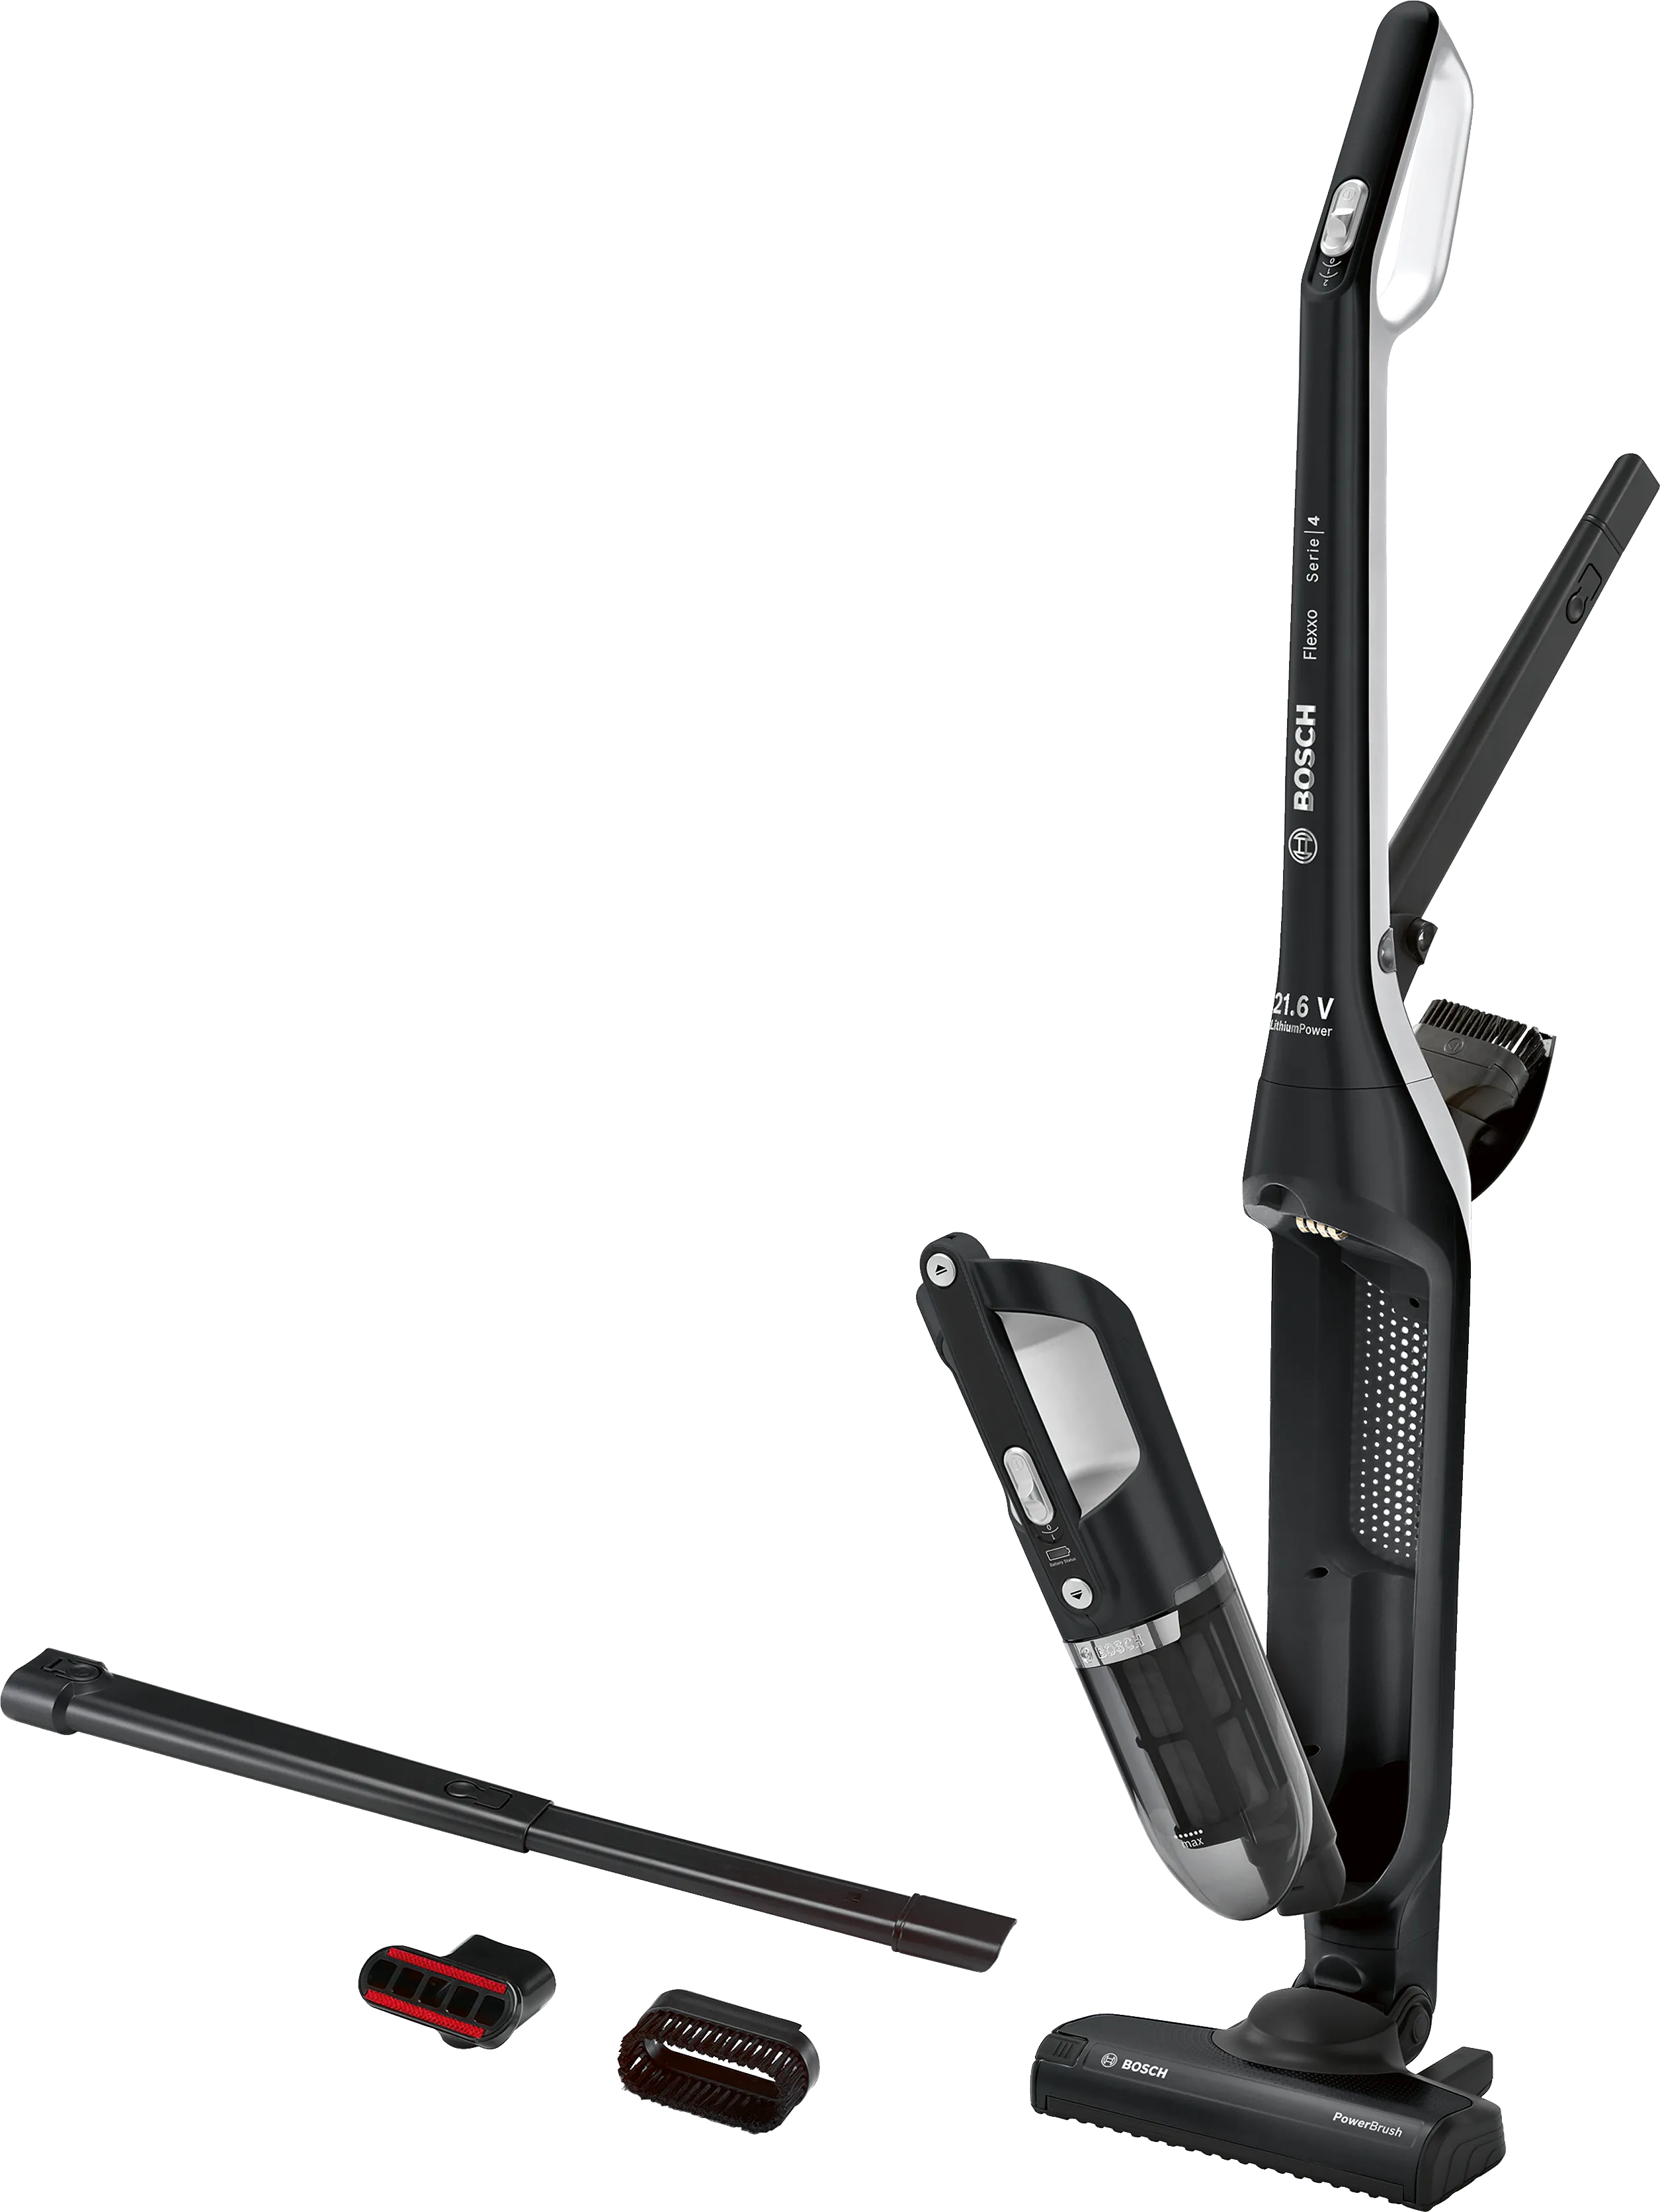 ซีรี่ 4 Rechargeable vacuum cleaner Flexxo 21.6V สีดำ 